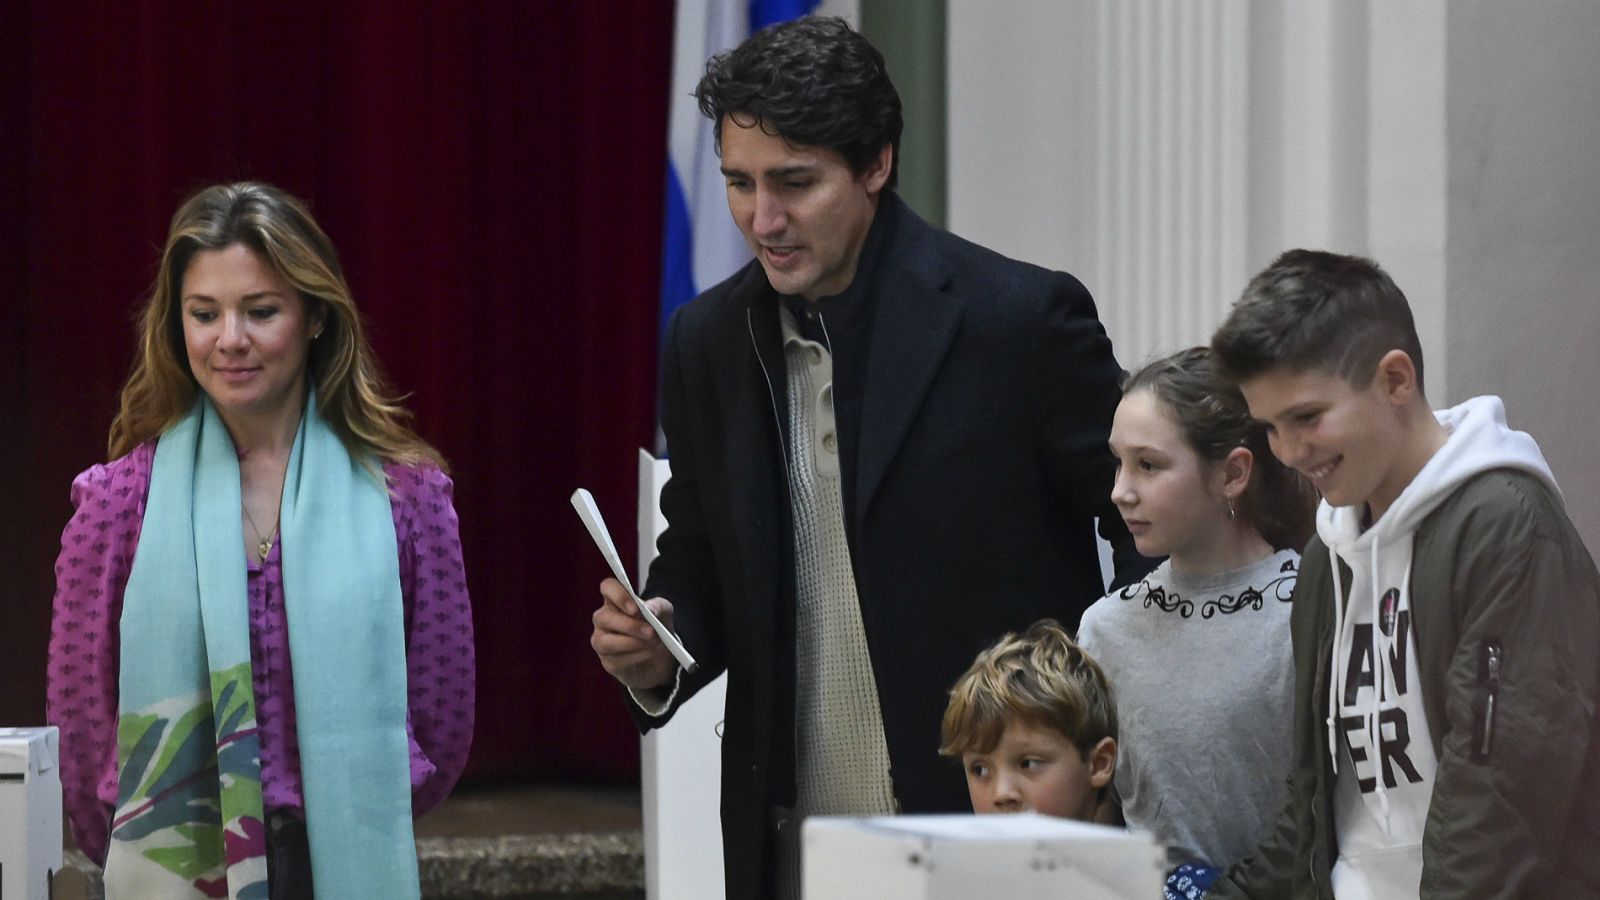 Elecciones Canadá | El canadiense Justin Trudeau se juega su futuro político en las elecciones - RTVE.es